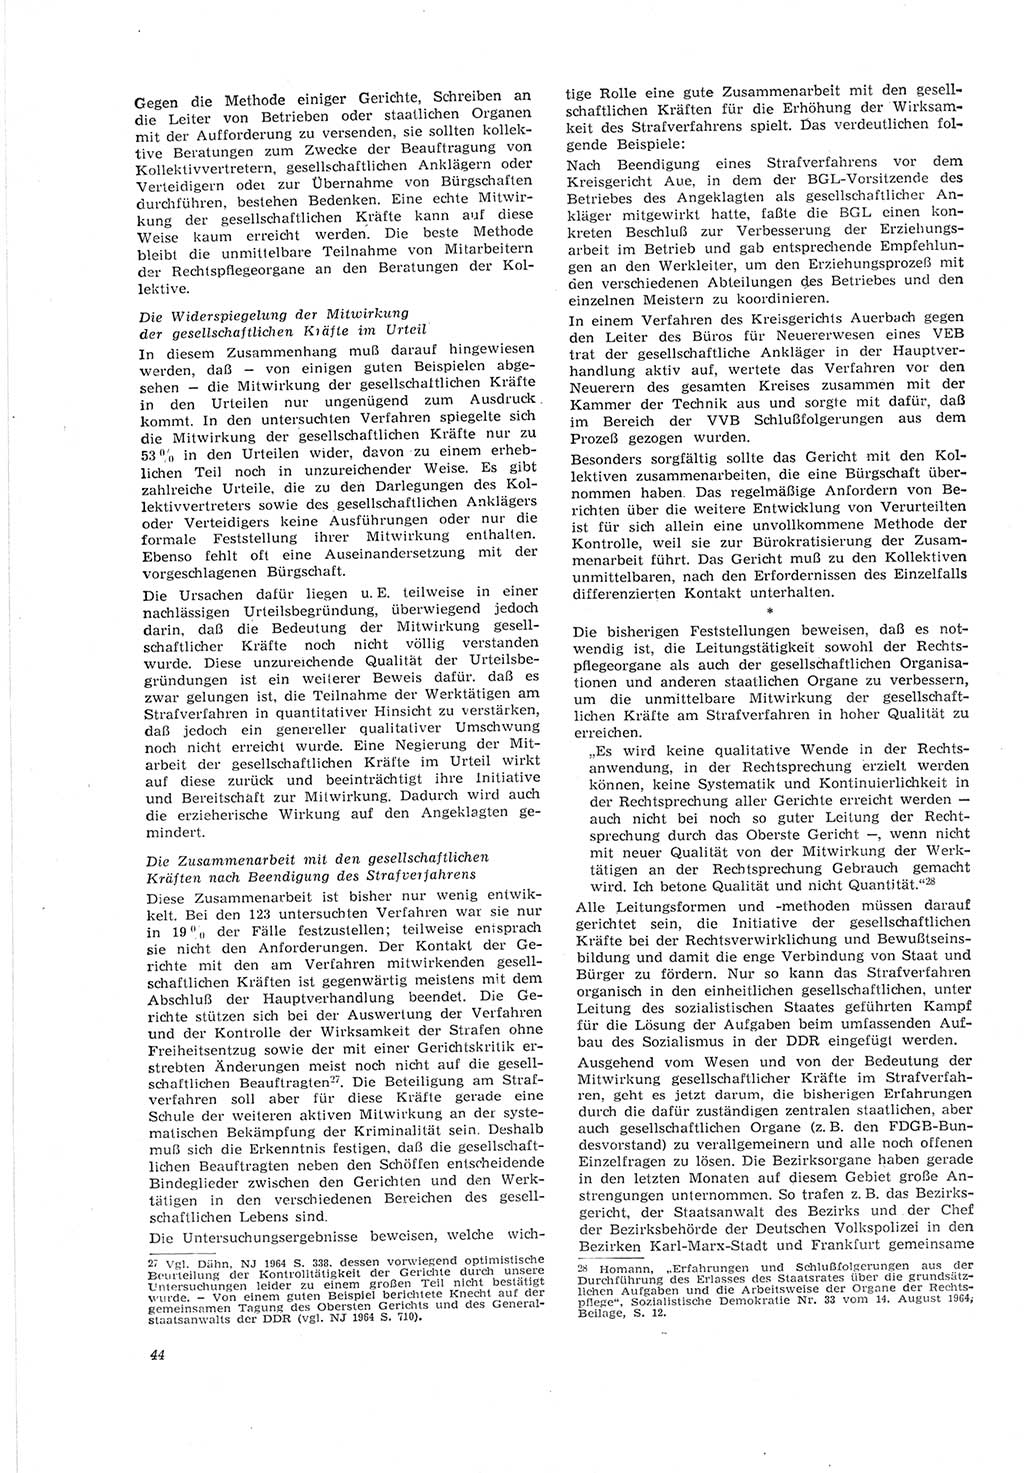 Neue Justiz (NJ), Zeitschrift für Recht und Rechtswissenschaft [Deutsche Demokratische Republik (DDR)], 19. Jahrgang 1965, Seite 44 (NJ DDR 1965, S. 44)